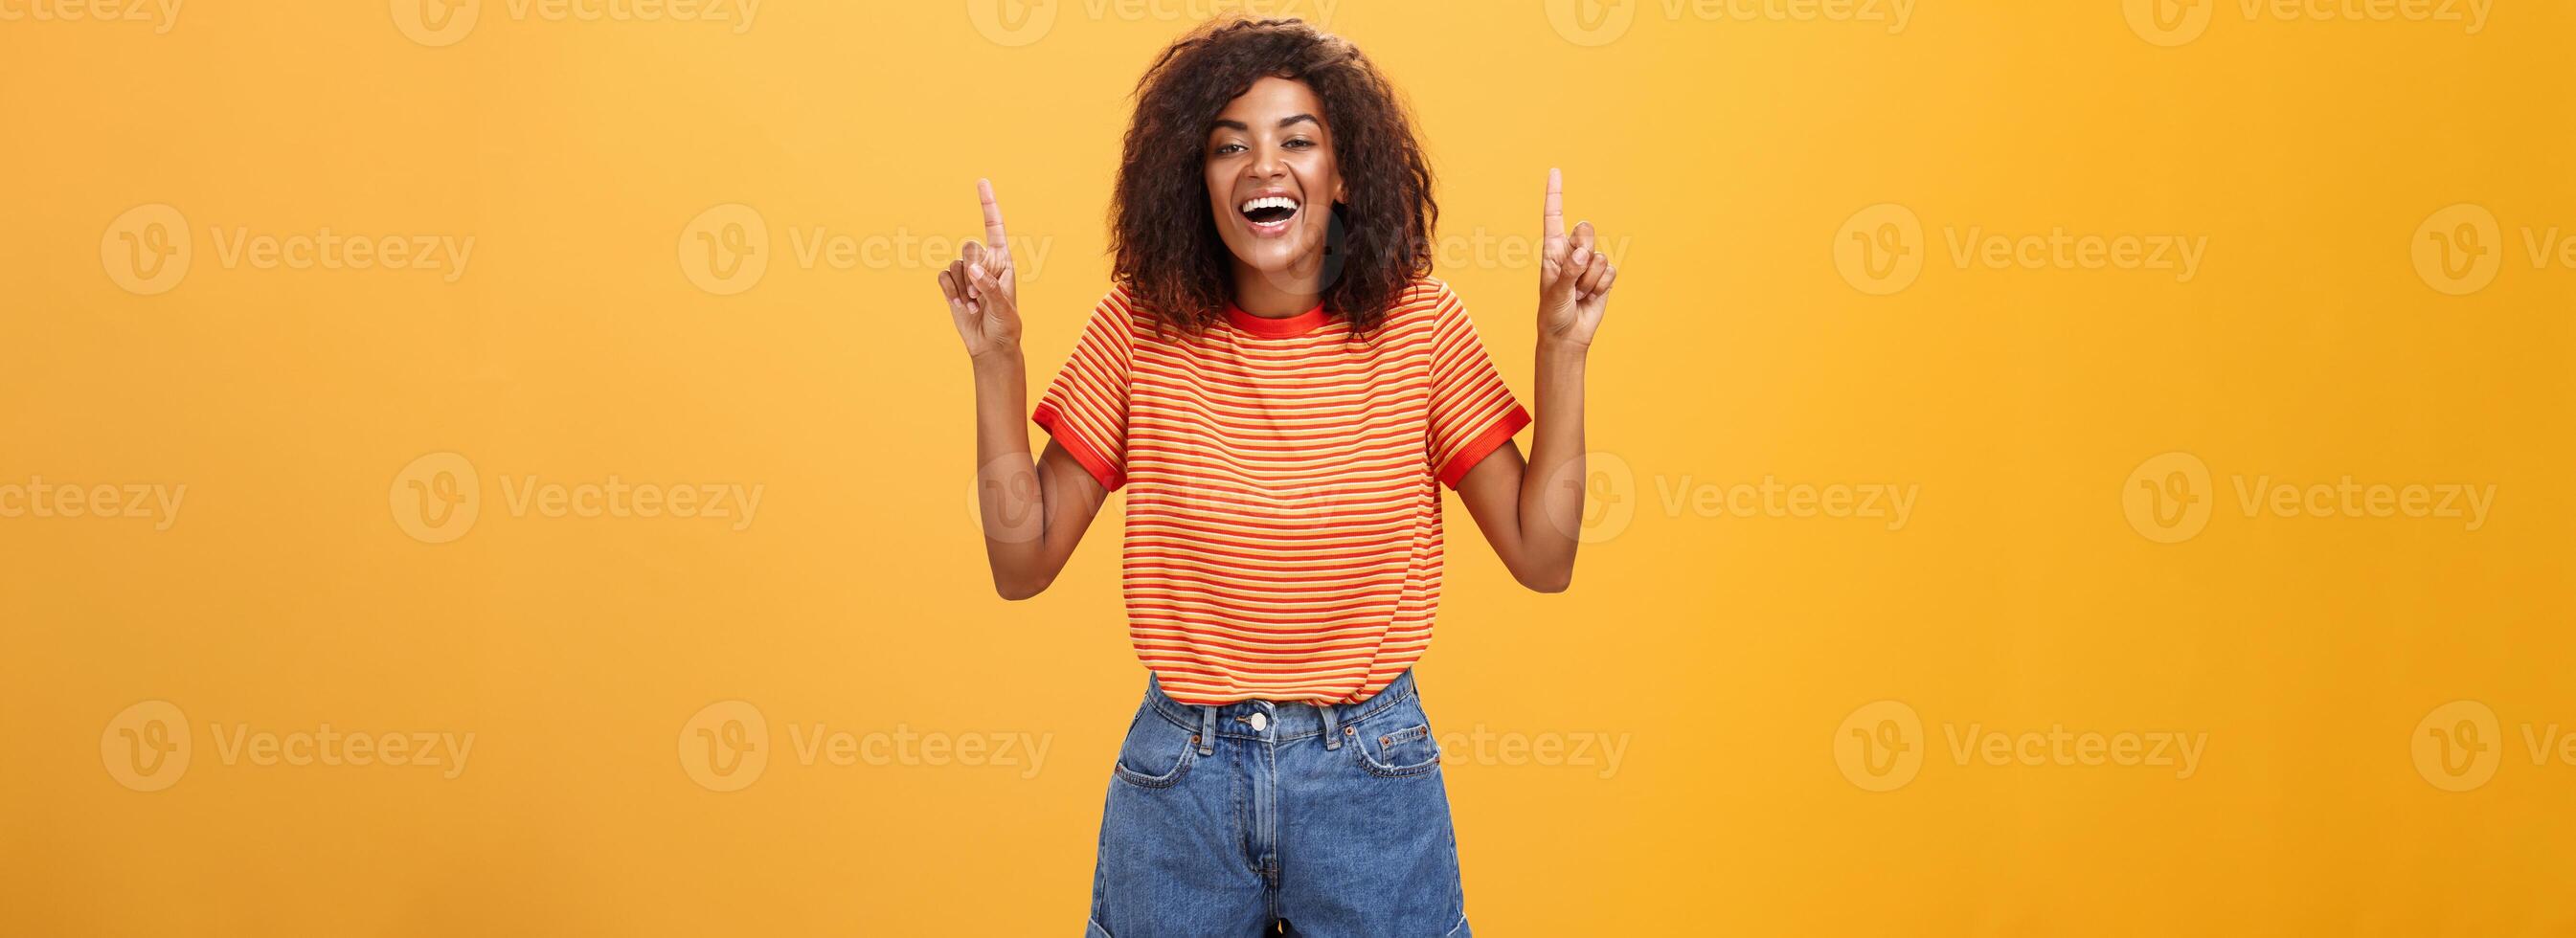 mujer sensación divertido y entretenido. retrato de contento despreocupado elegante afroamericano niña con afro peinado riendo fuera ruidoso alegremente señalando arriba con elevado brazos terminado naranja pared foto